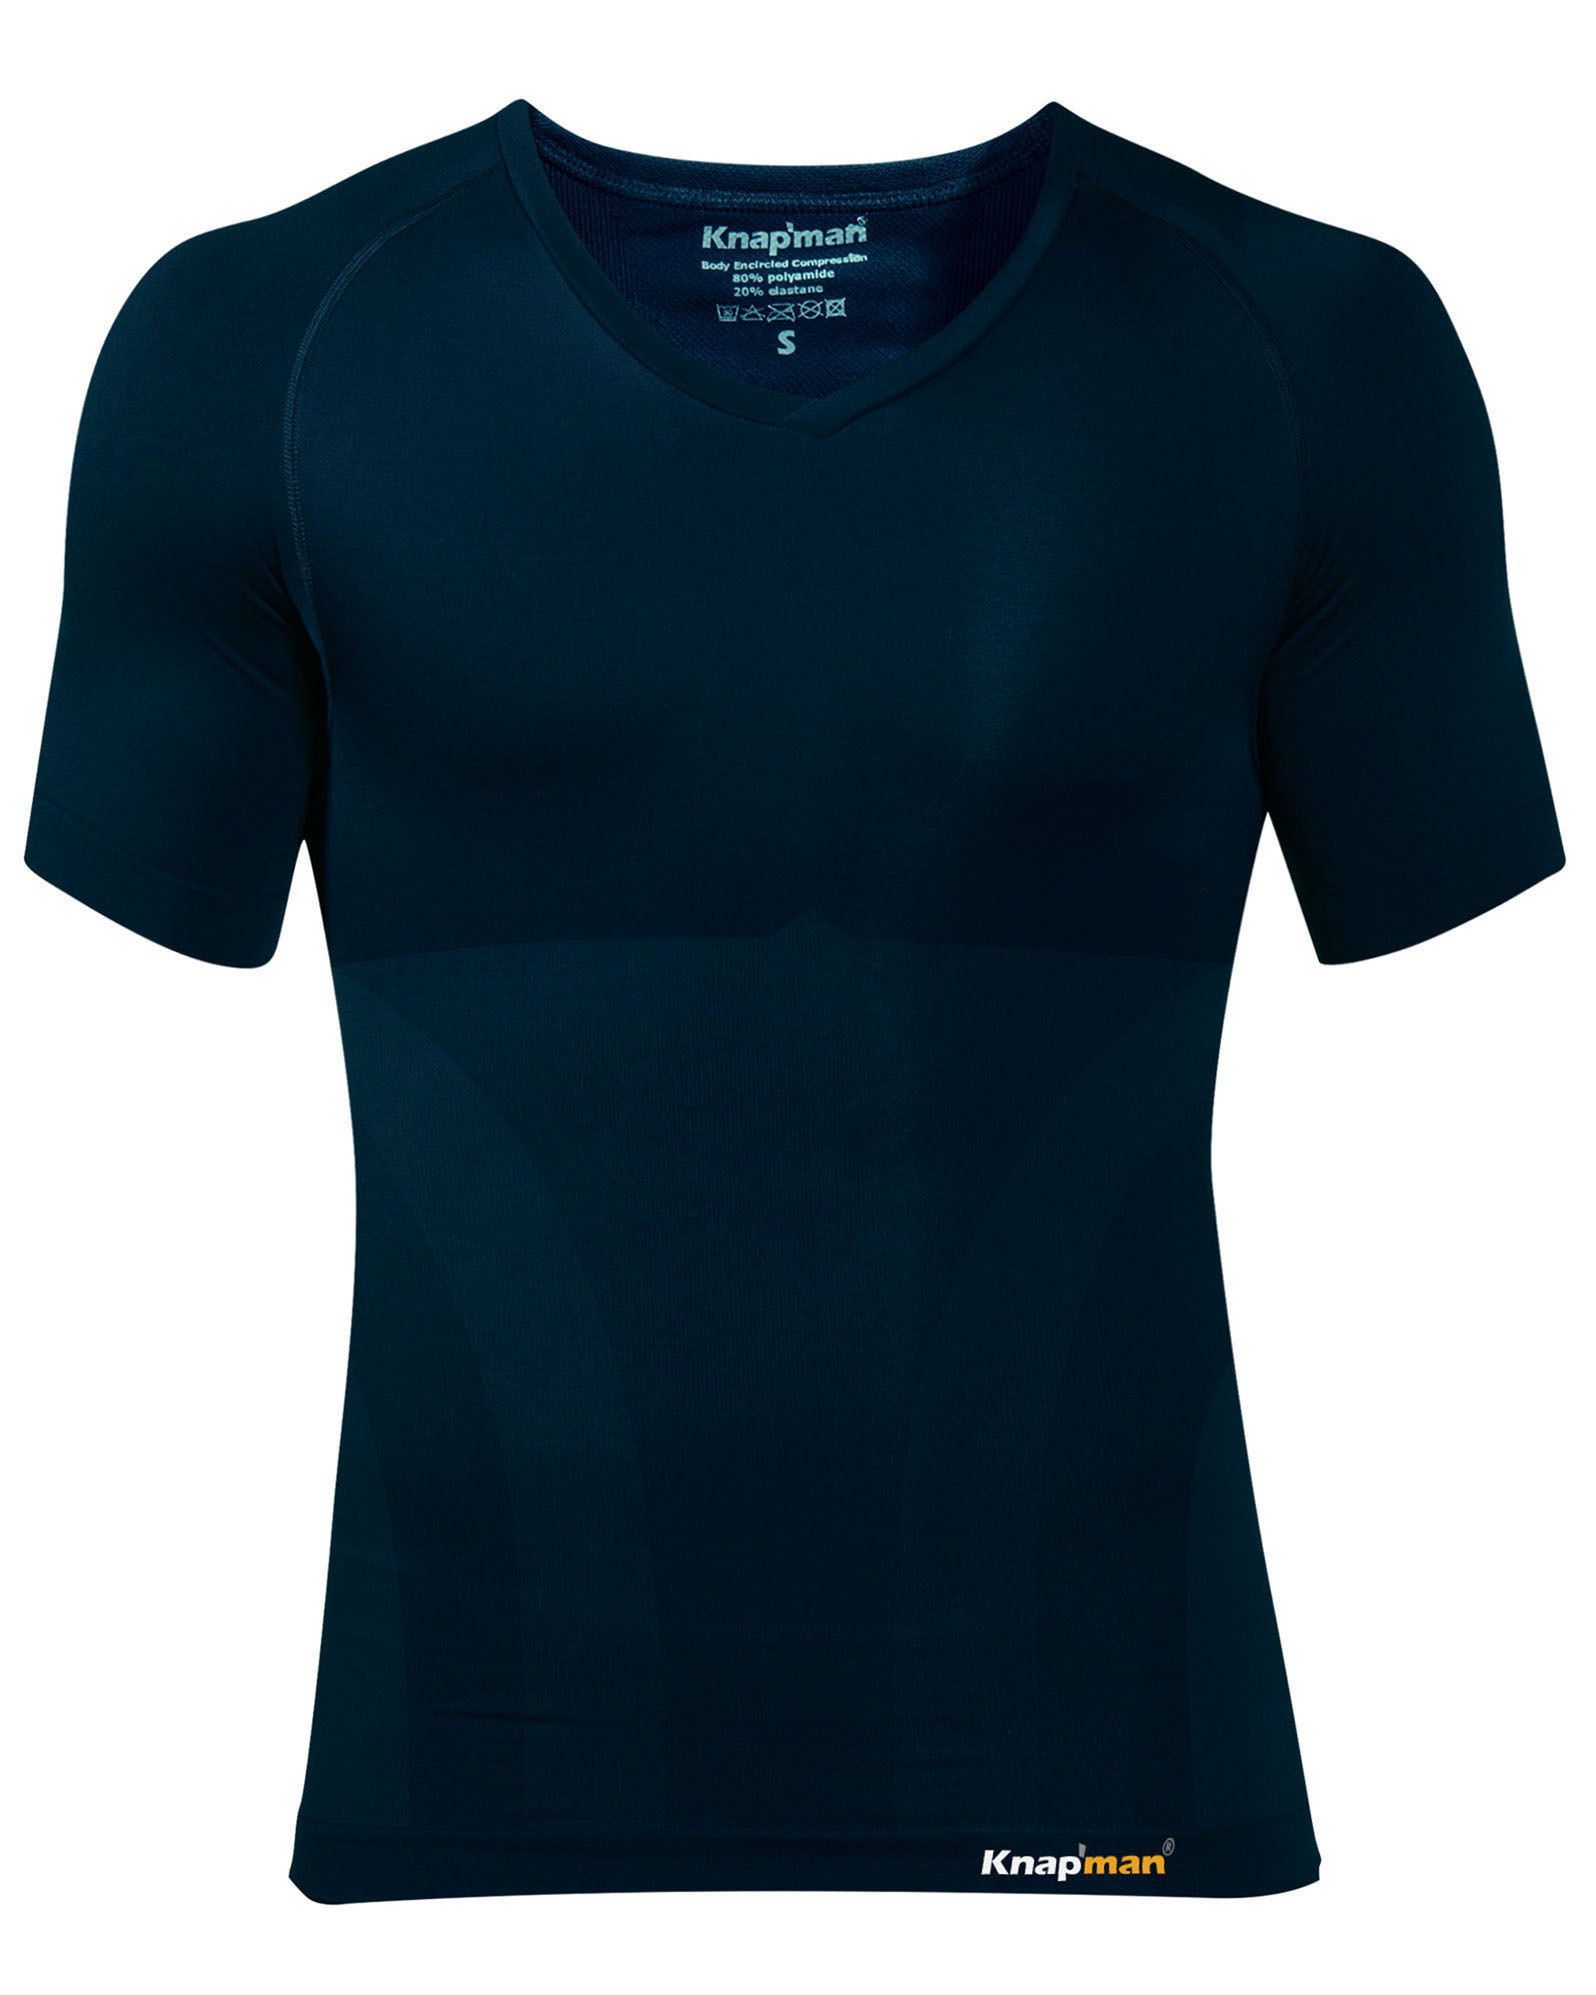 Knap'man Shop  Knap'man Compression Shirt V-Neck Navy Blue